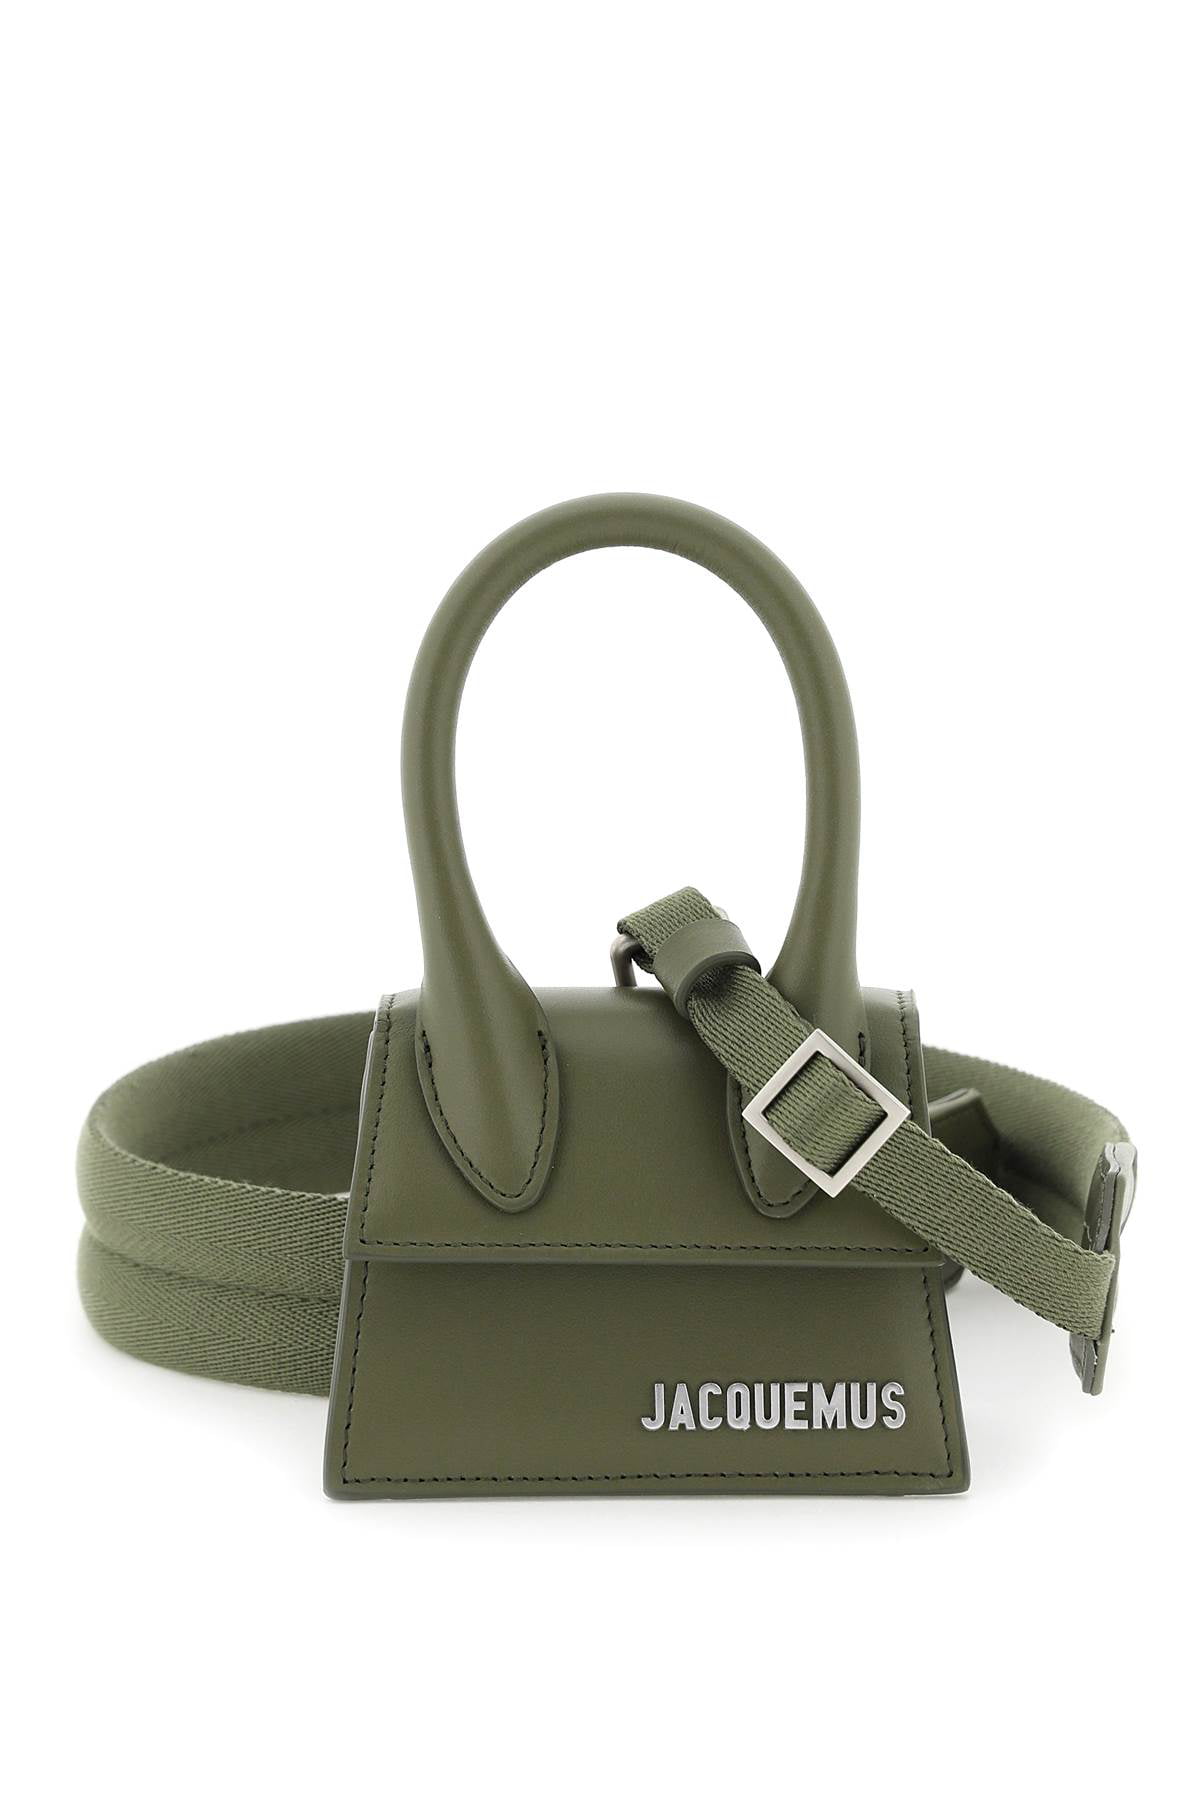 Where to Buy Jacquemus Mini Le Petit Chiquito Bag